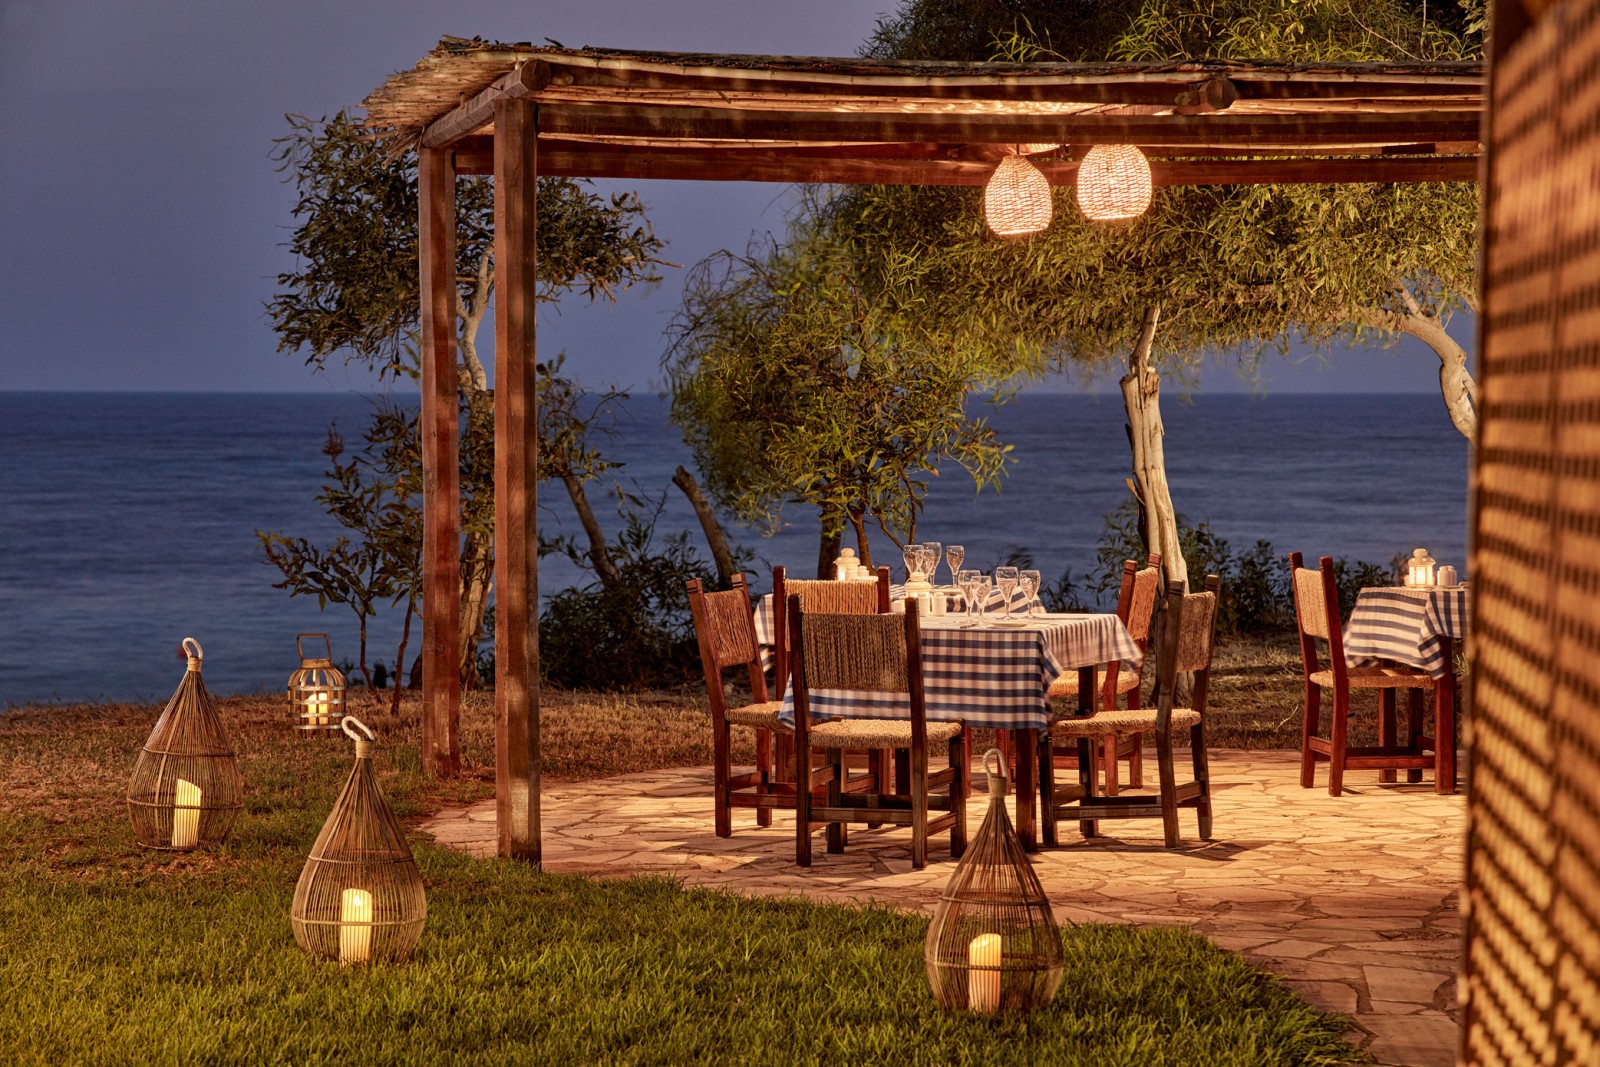 Grecian bay Hotel-Restoran na plazi.jpg